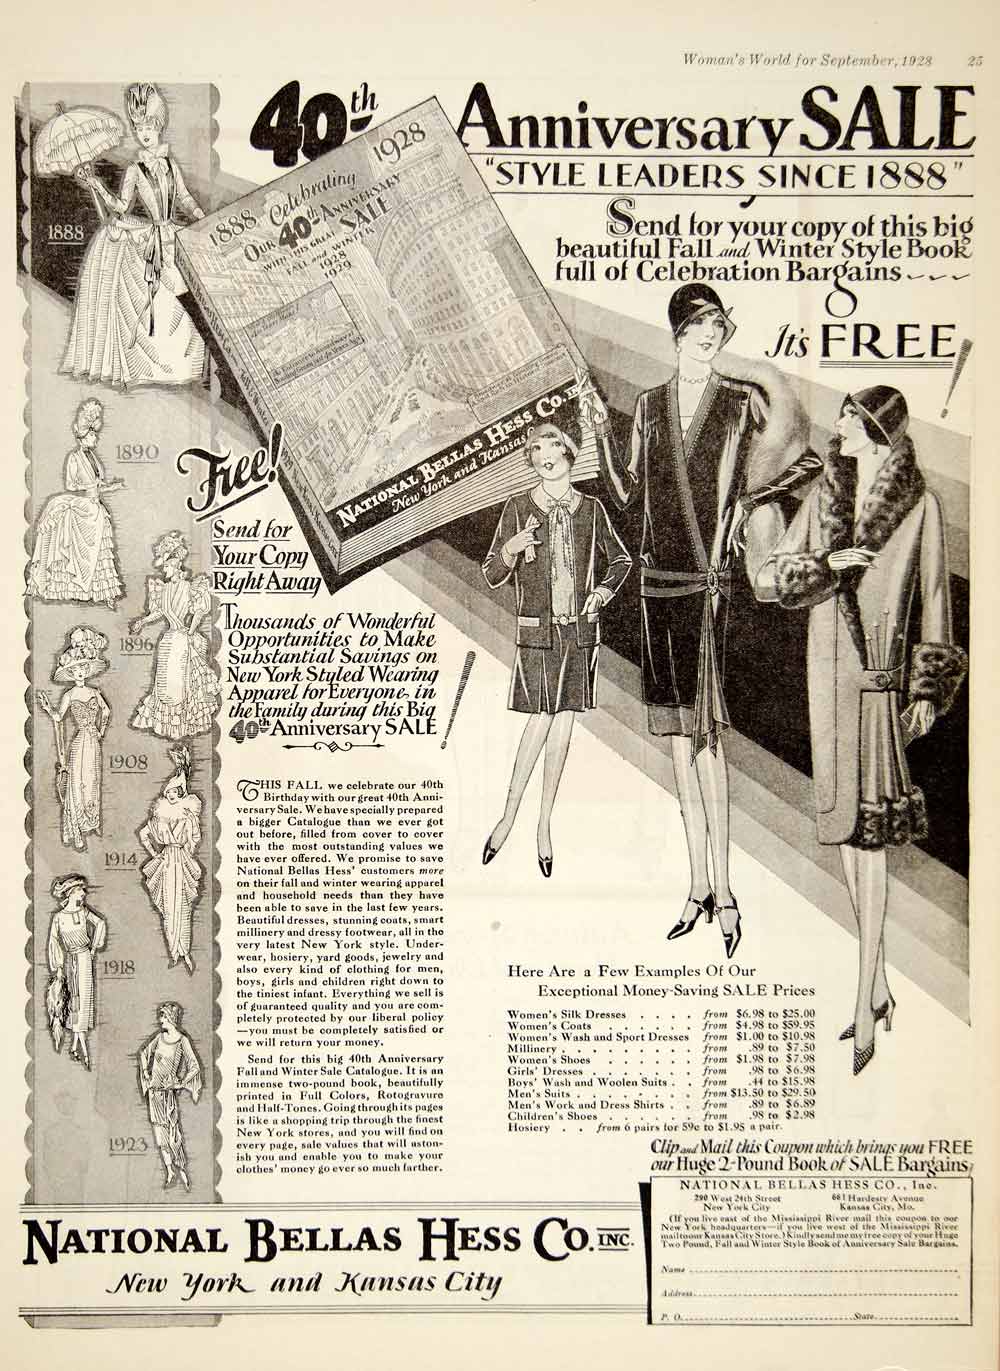 1952 Gemex Vintage Ad Be an Angel